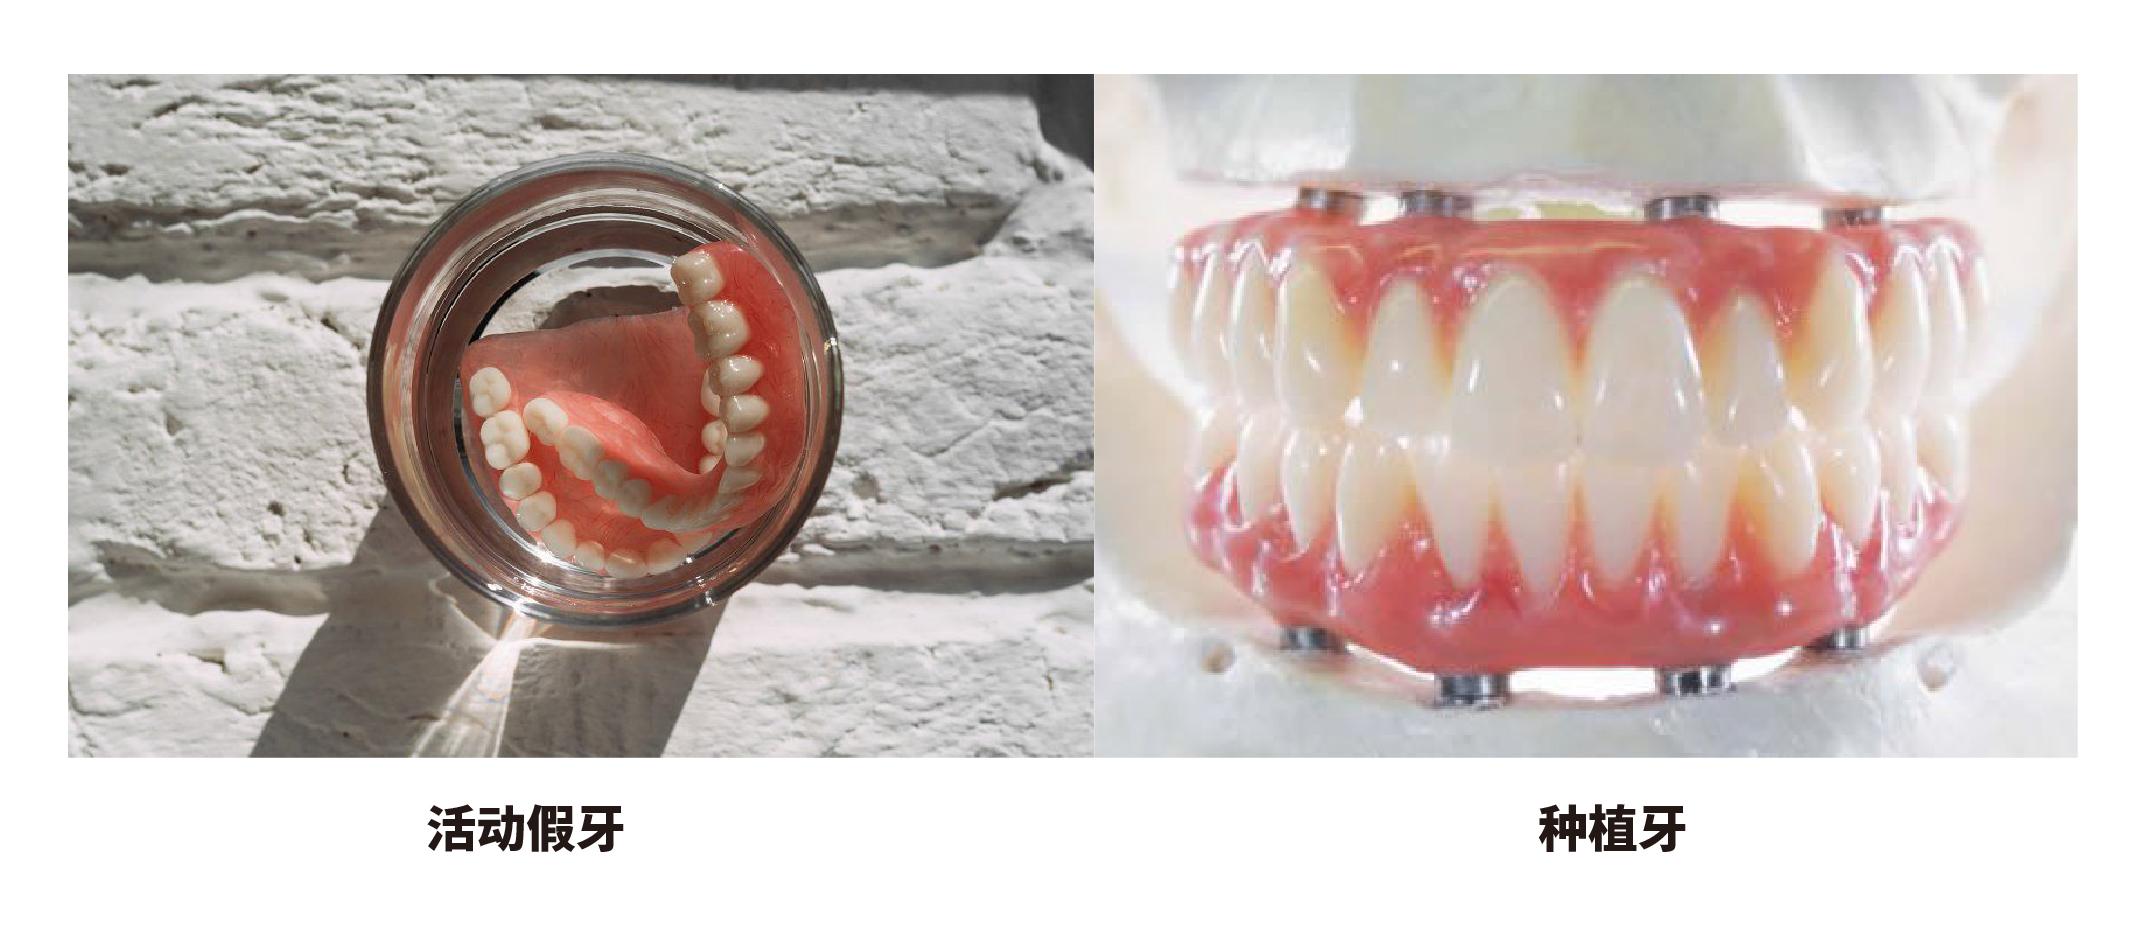 活動假牙v.s固定式假牙